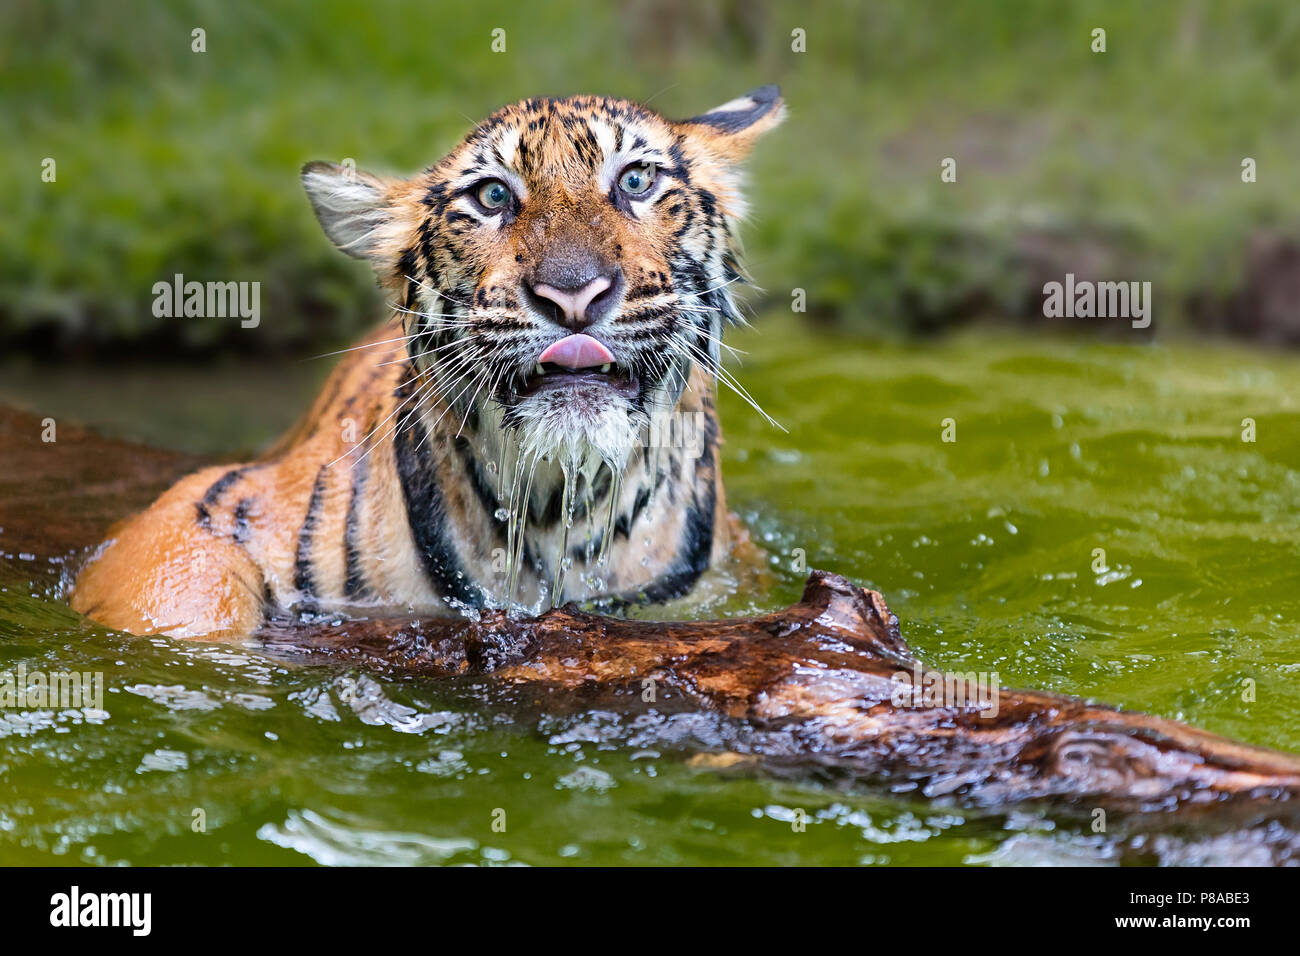 Bébé tigre indochinois, connu sous le nom de Panthera tigris Corbetti en latin, jouant dans l'eau, la Thaïlande Banque D'Images